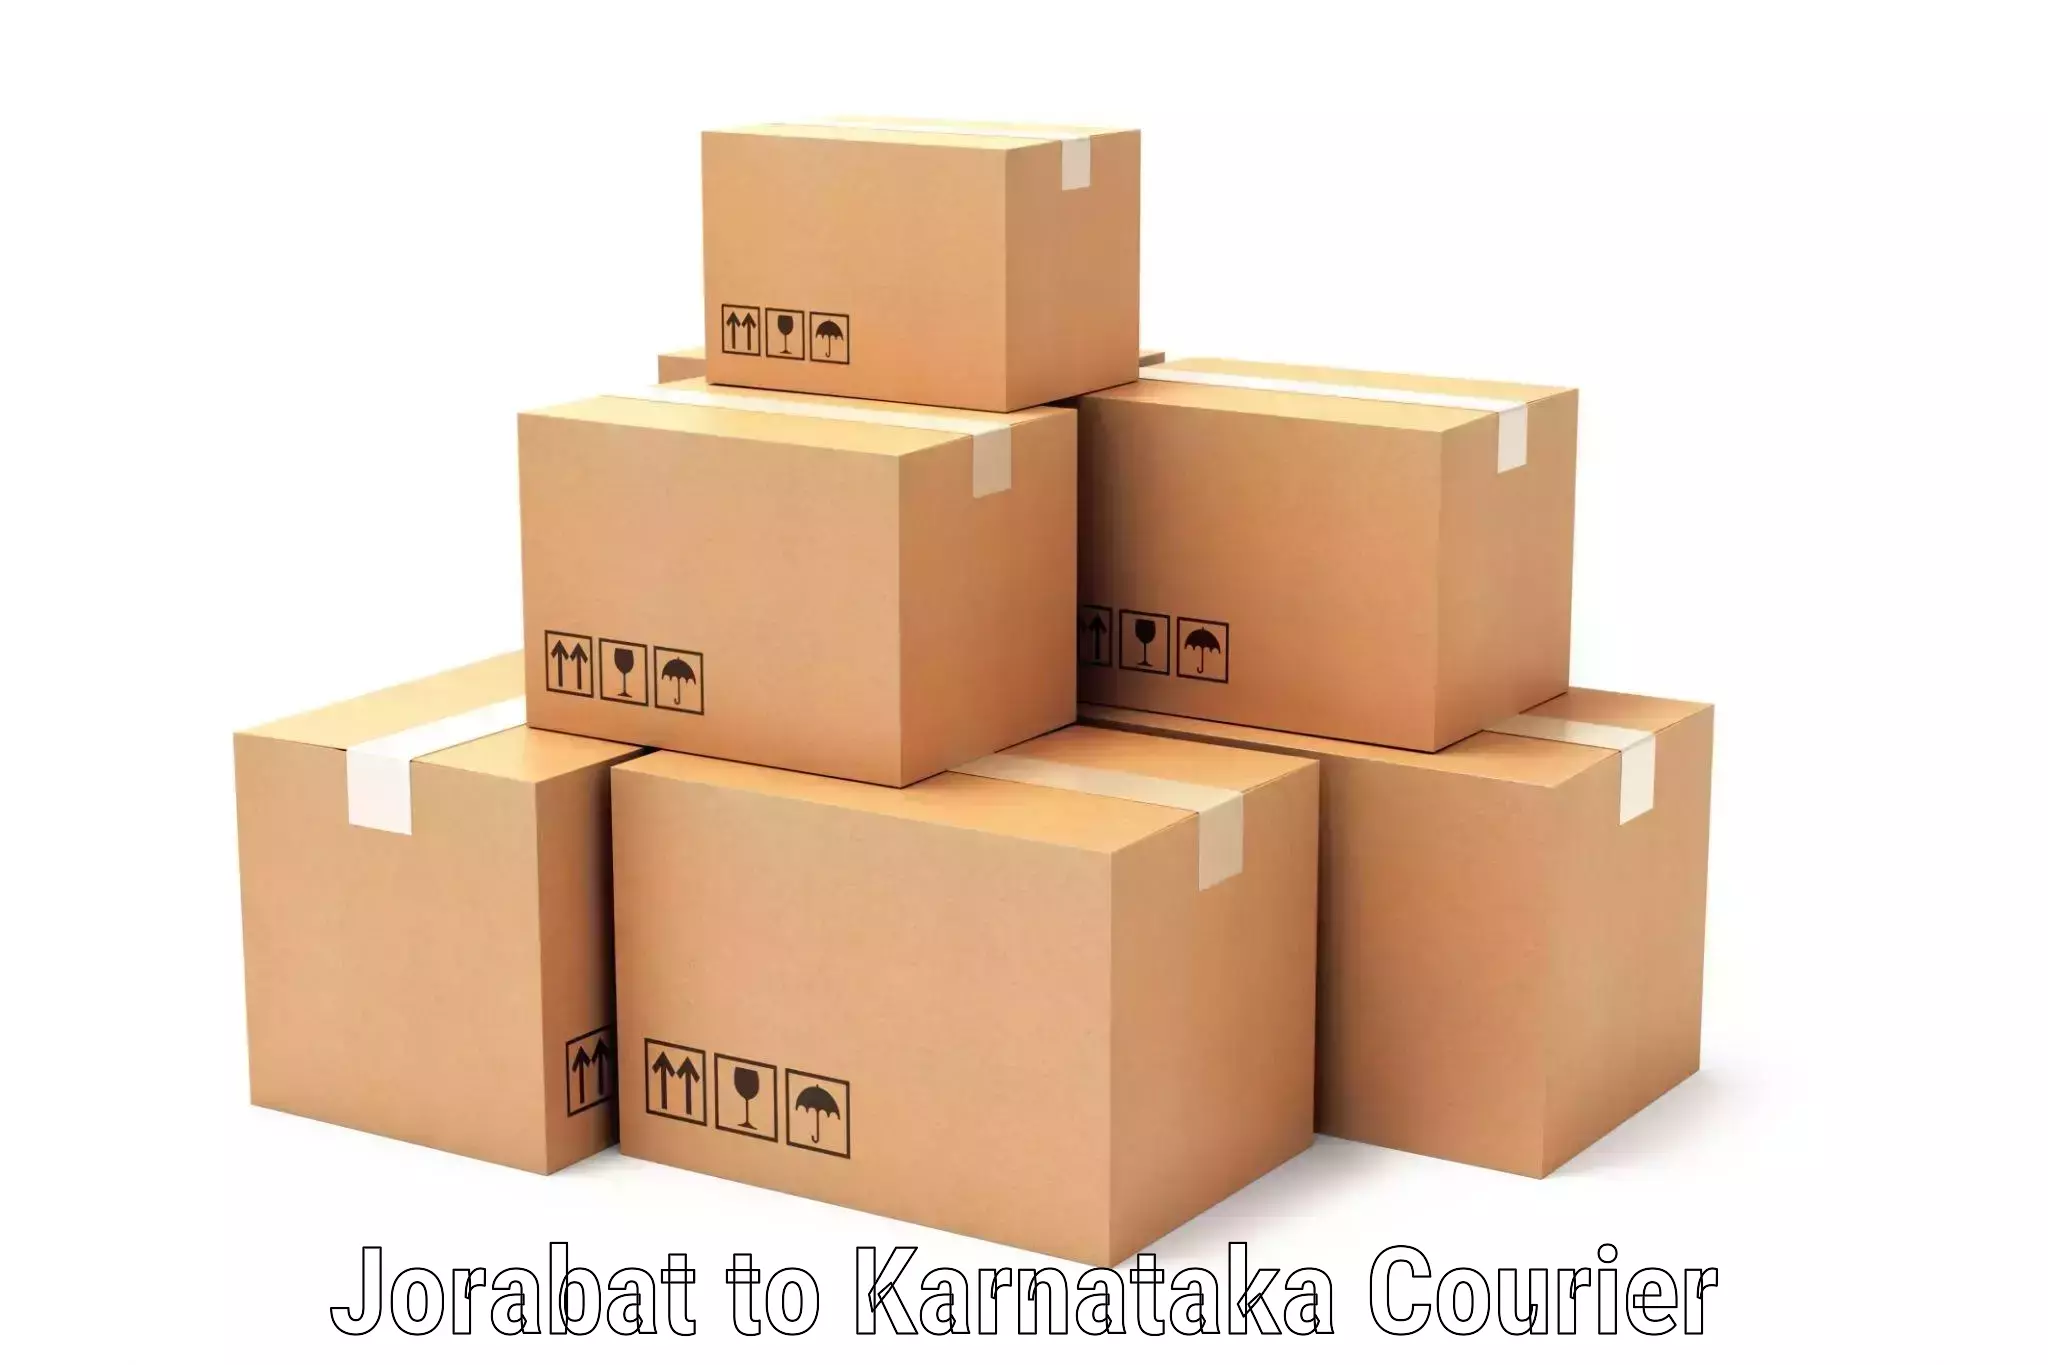 Reliable parcel services Jorabat to Mangalore Port